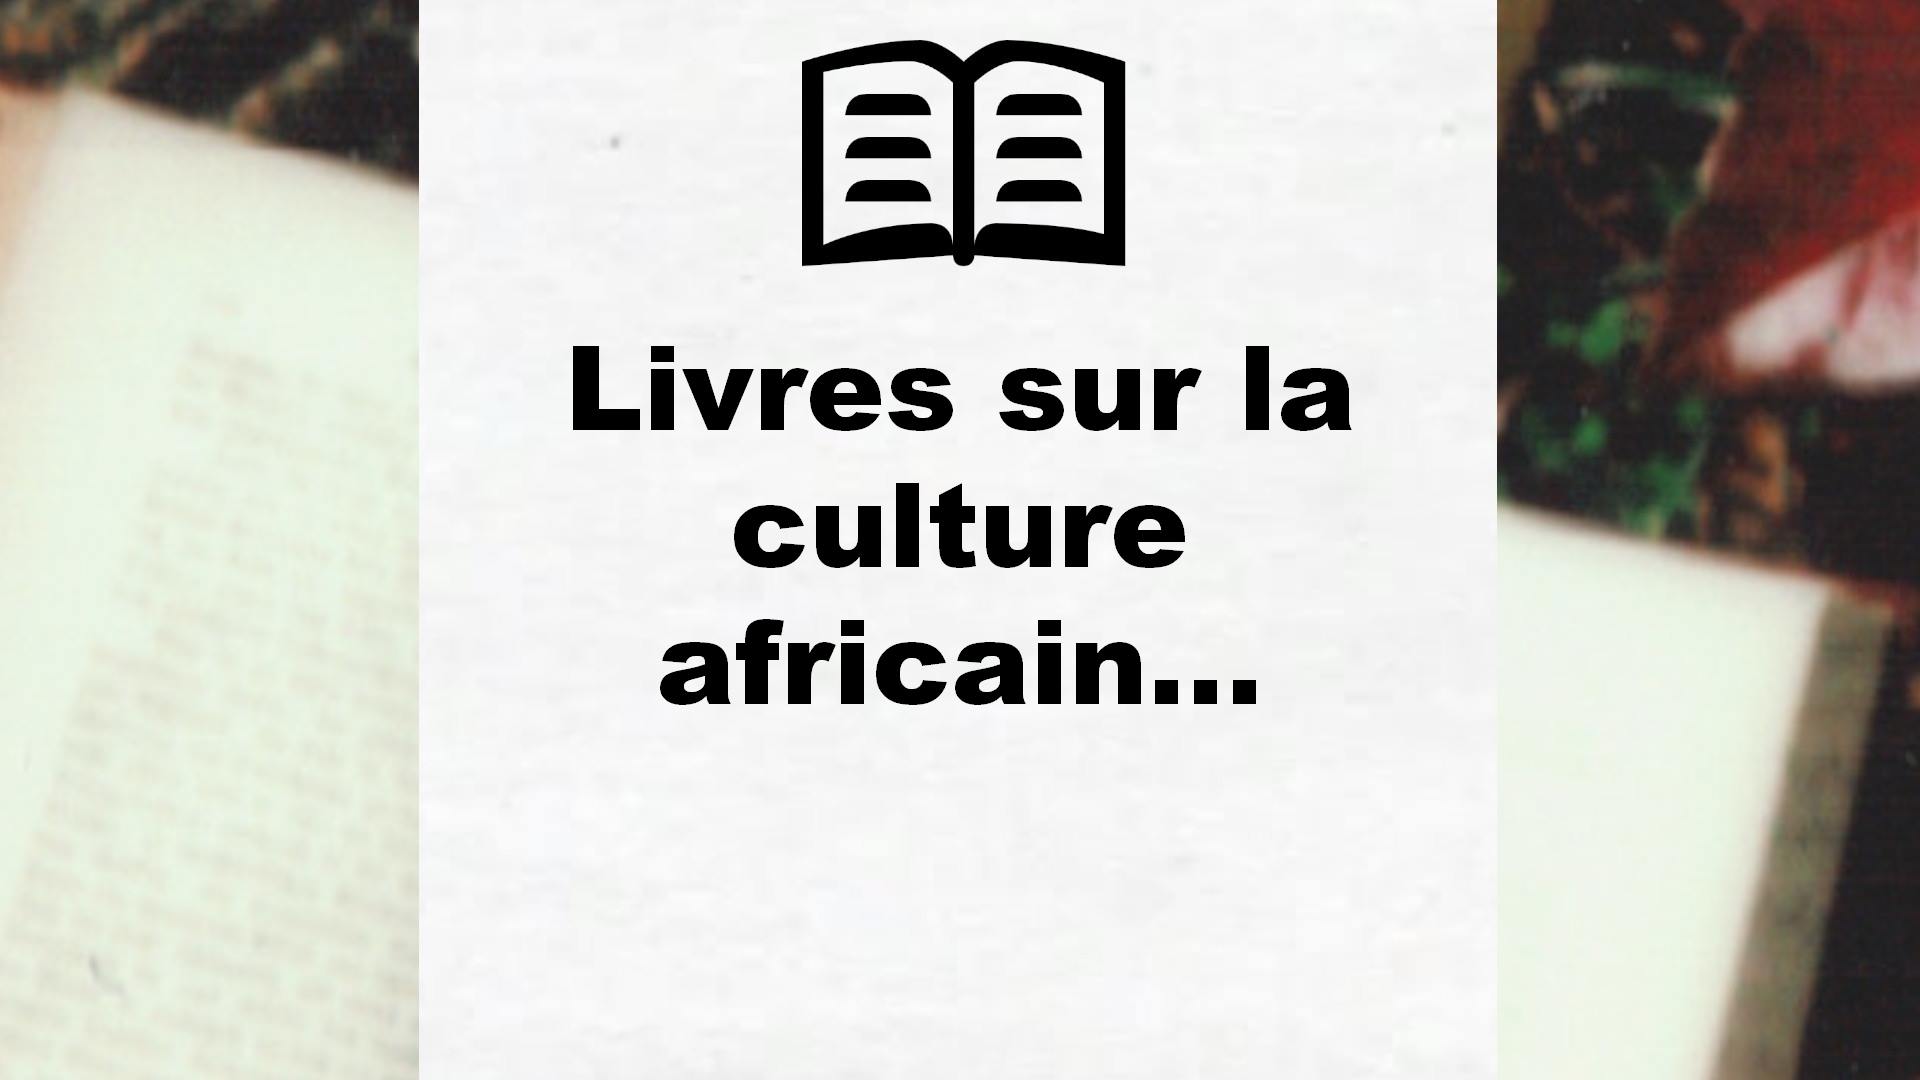 Livres sur la culture africaine